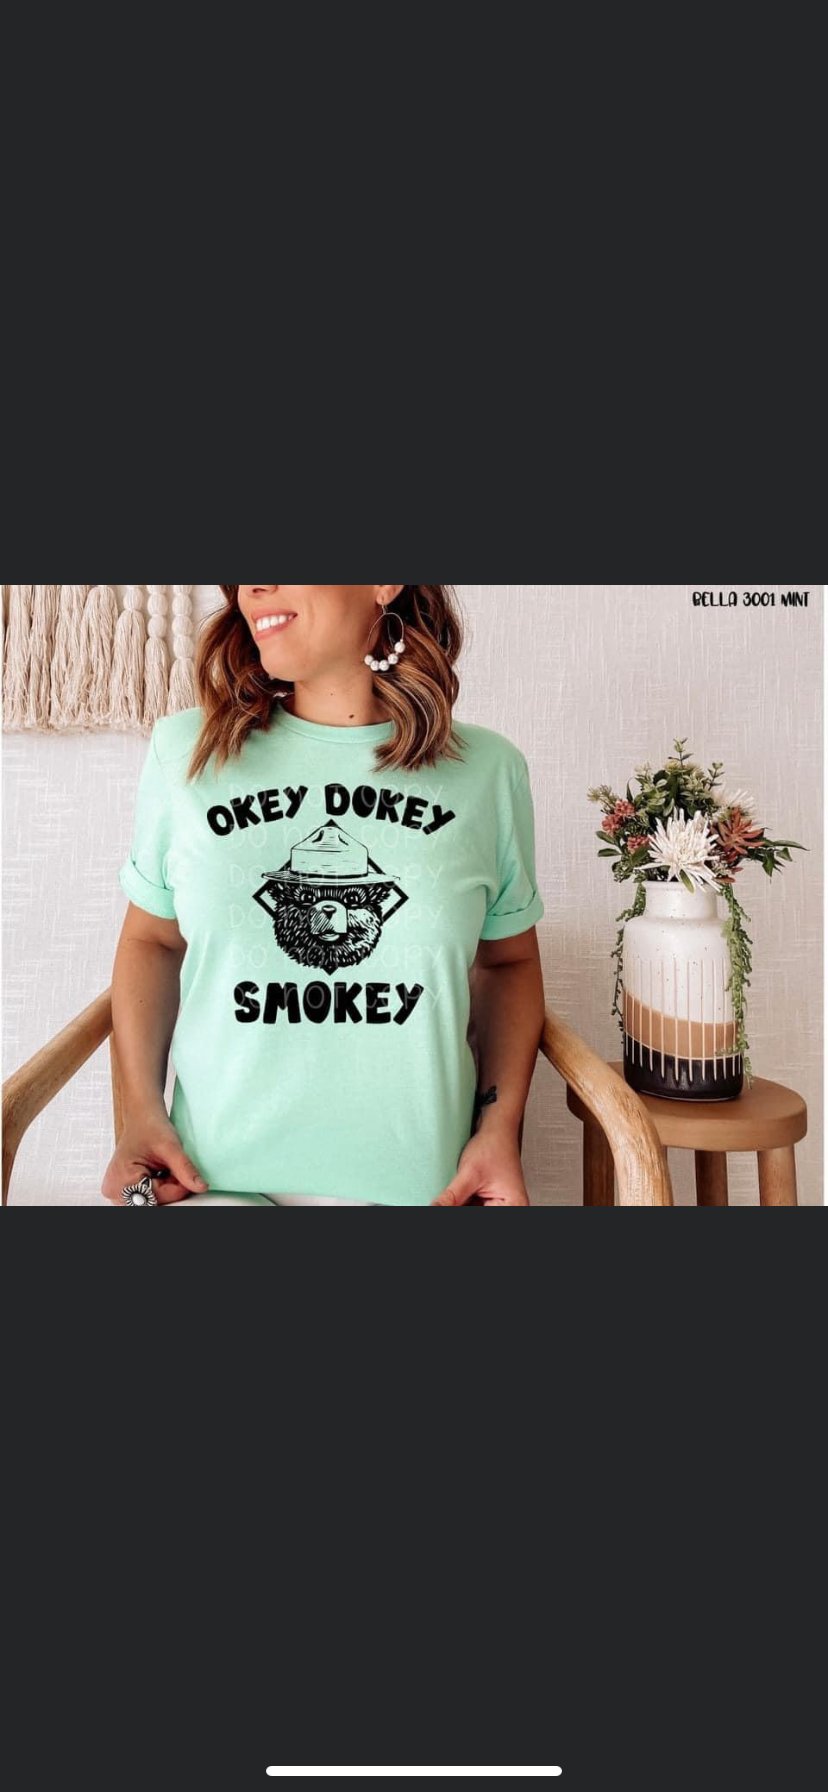 Okay Dokey Smokey Preorder